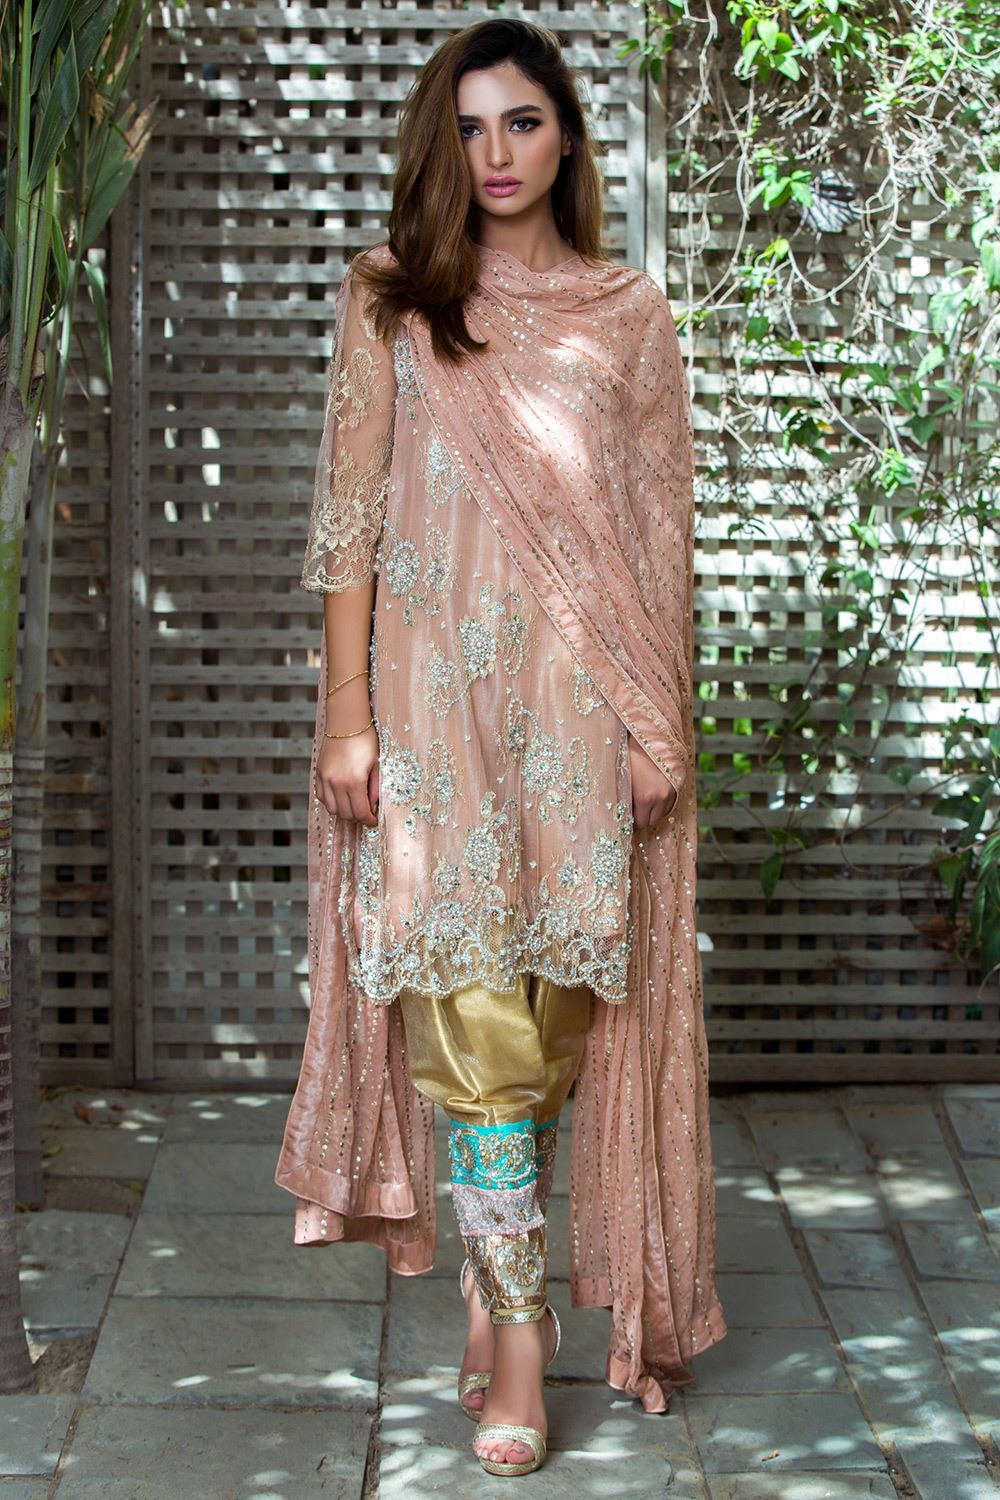 Buy Pakistani Mehndi Dress Online In India - Etsy India